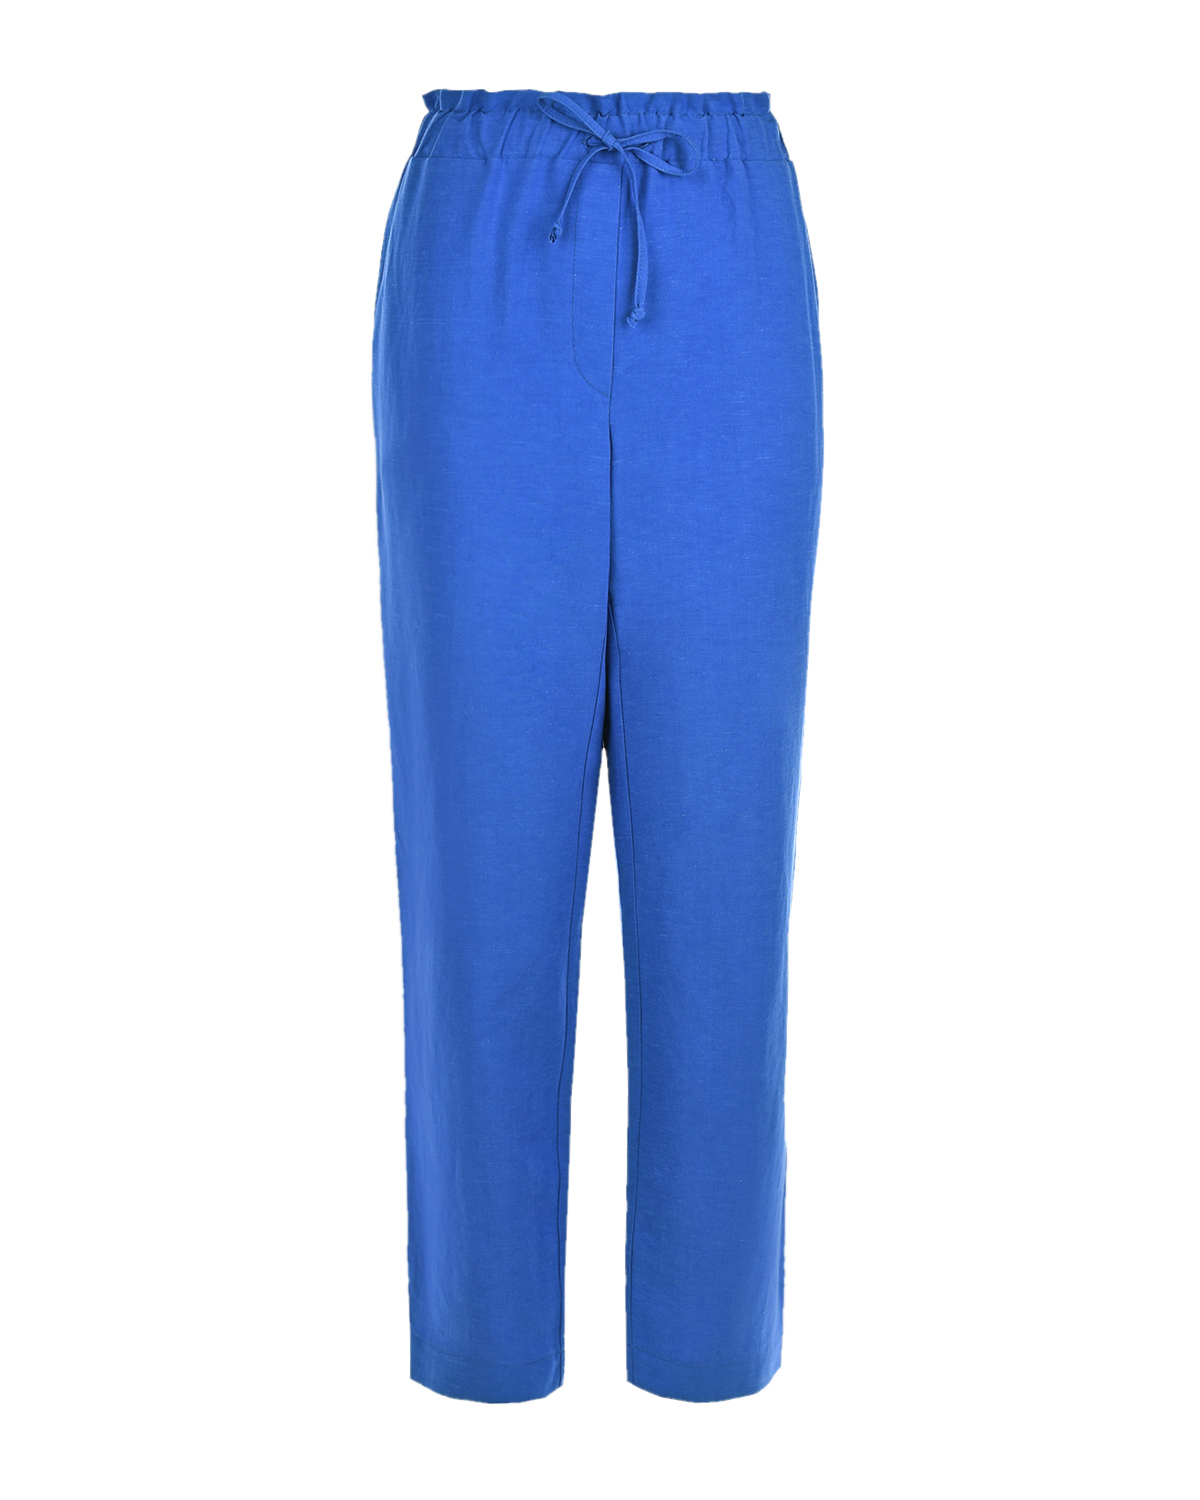 Синие брюки для беременных Pietro Brunelli синего цвета